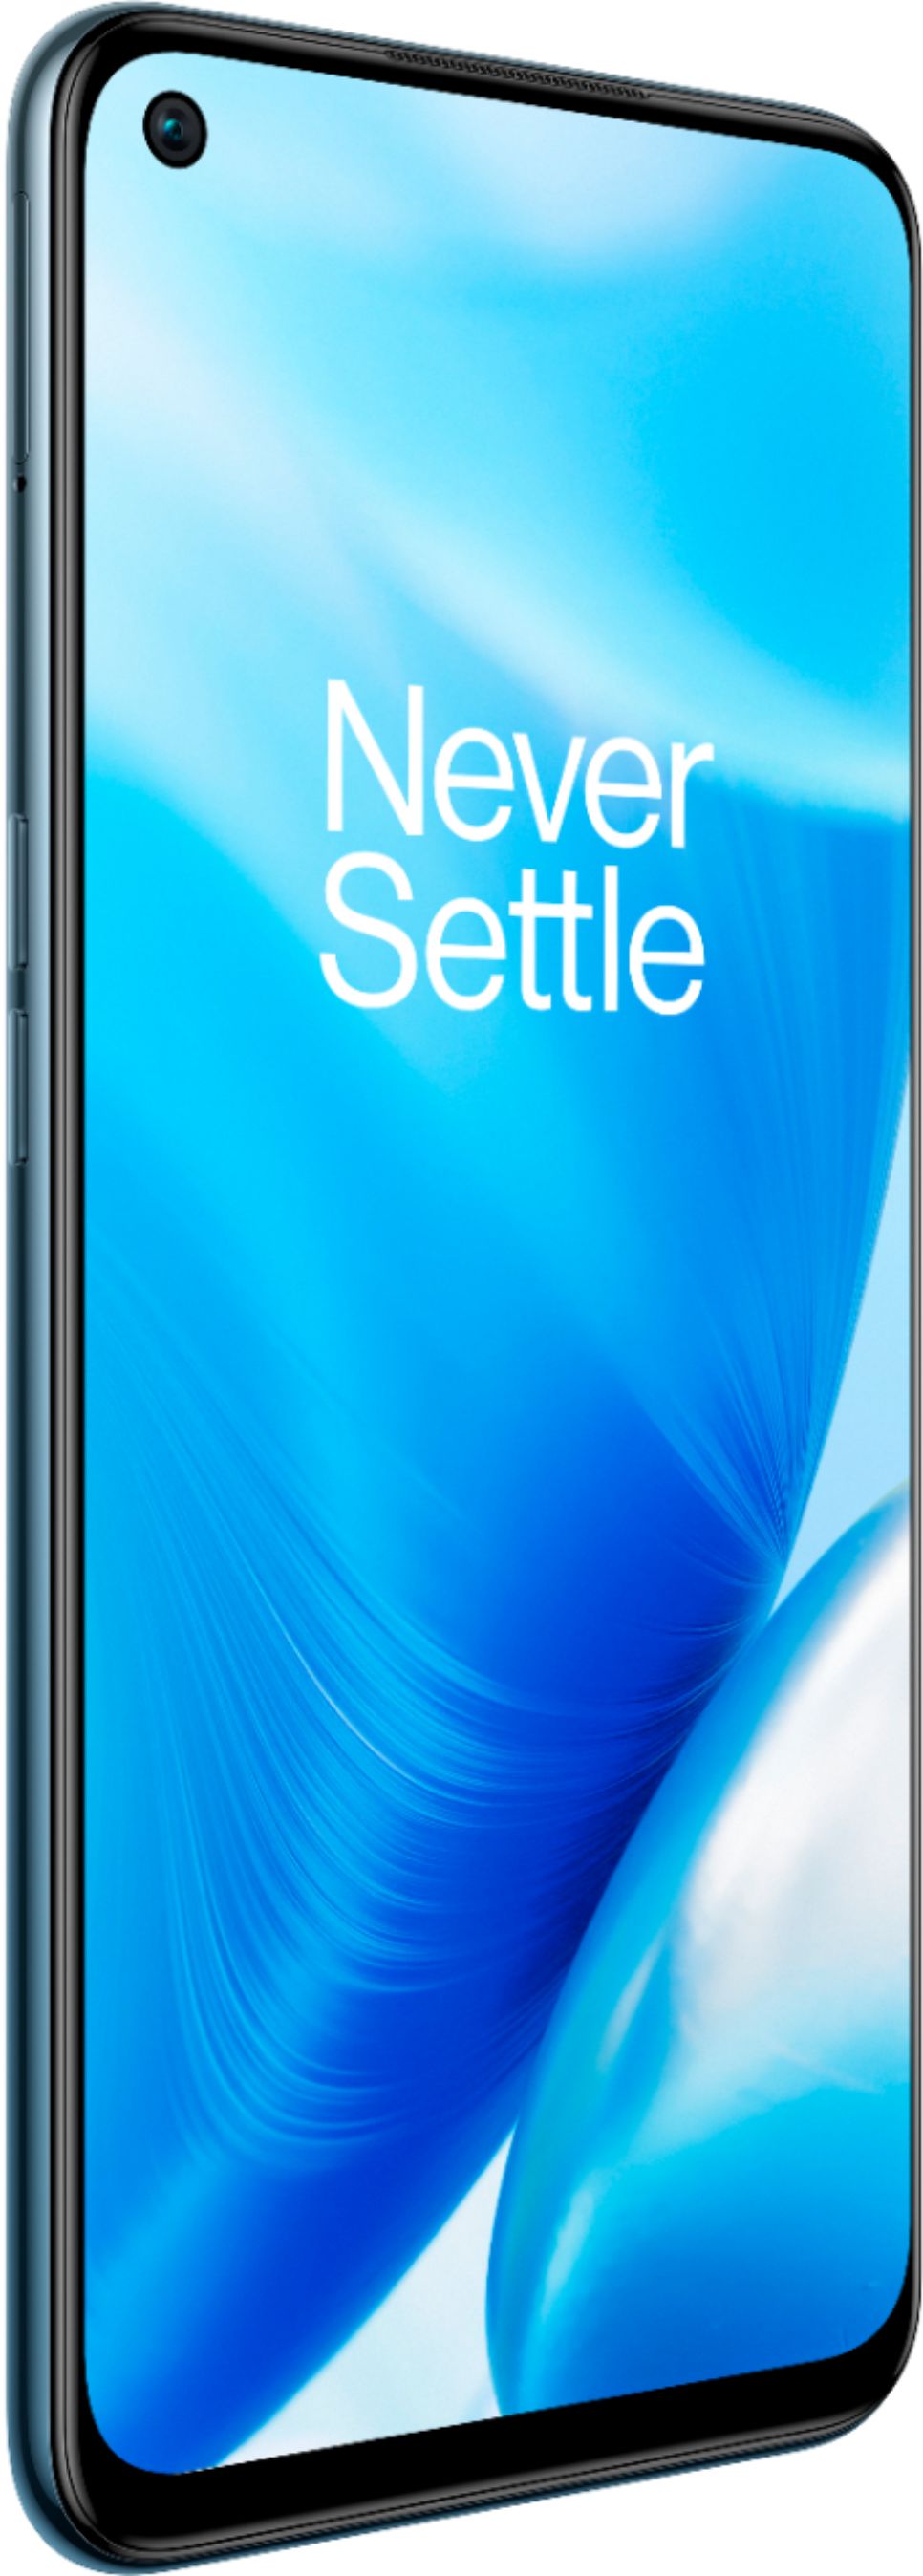 OnePlus Nord N200 5G 64GB (Unlocked) Blue Quantum DE2117 - Best Buy